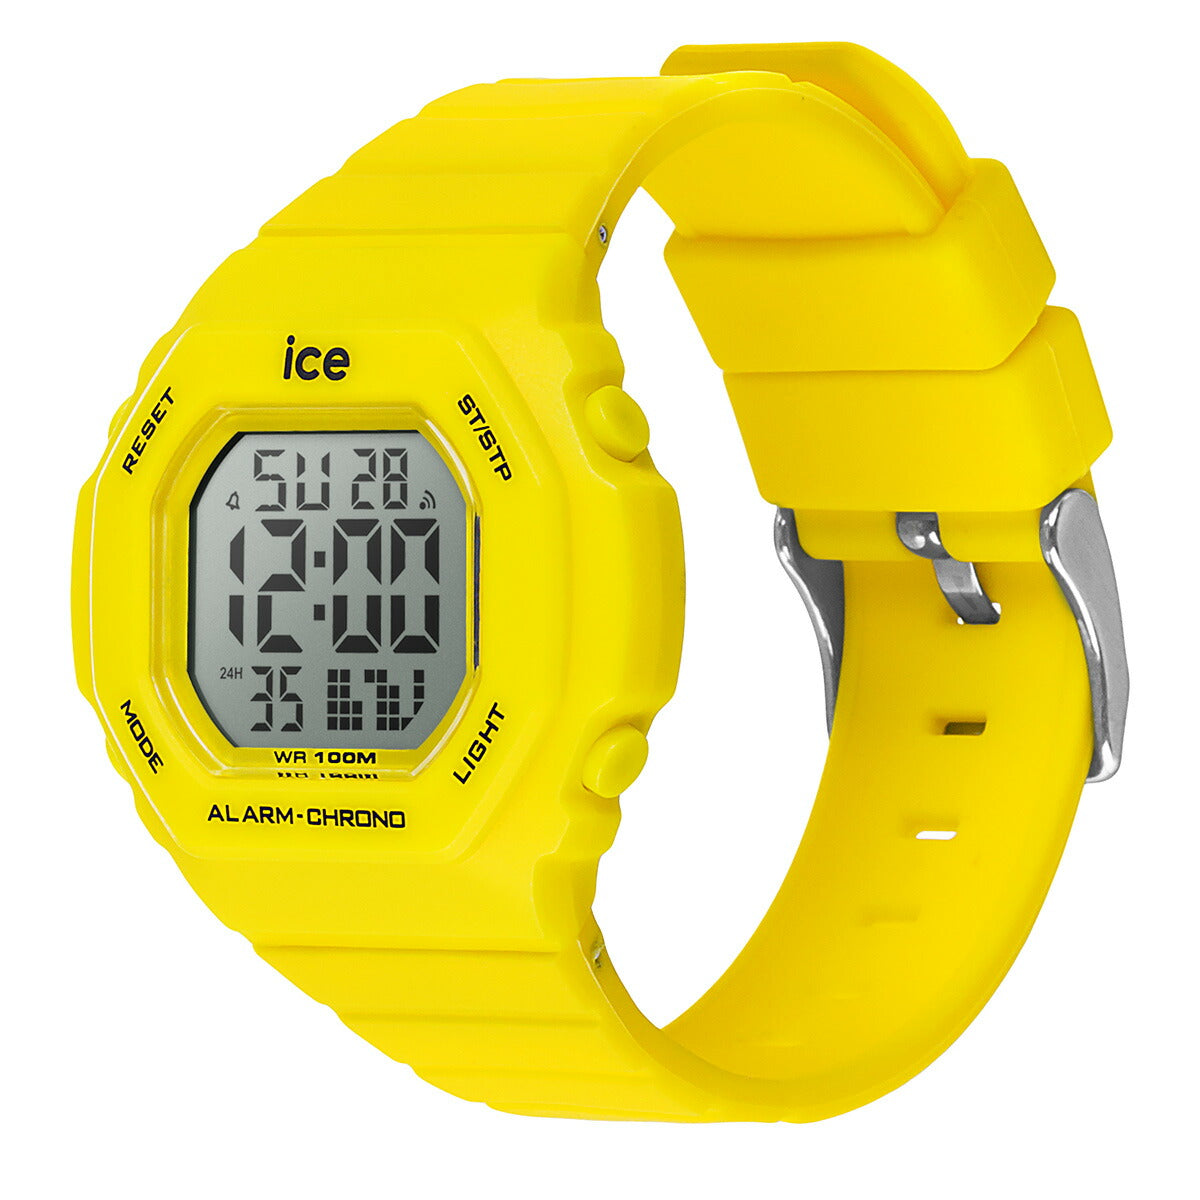 アイスウォッチ ICE-WATCH 腕時計 メンズ レディース アイスデジット ウルトラ ICE digit ultra イエロー 022098